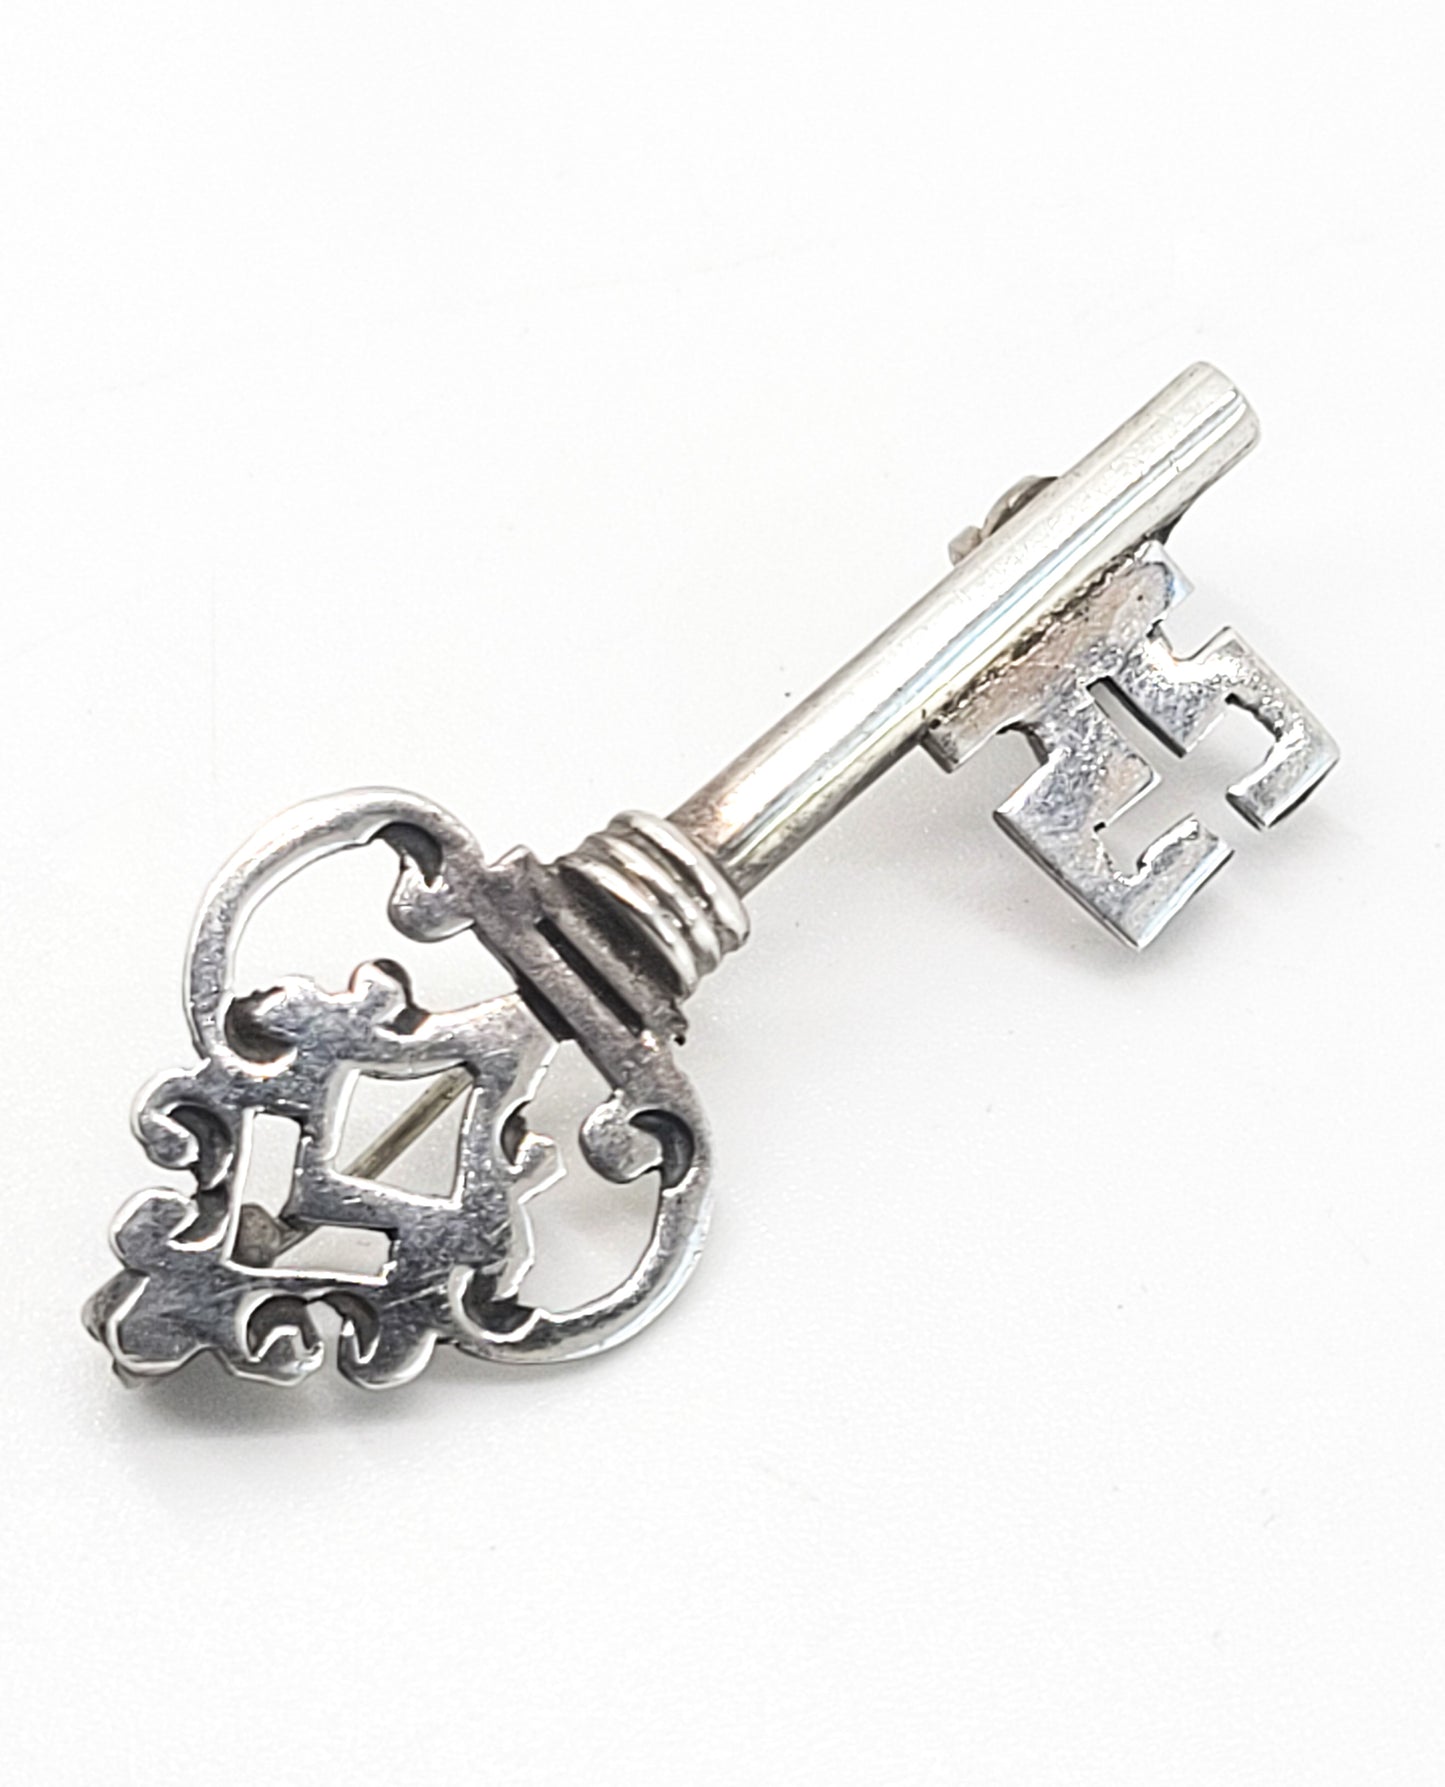 RBH Skeleton Key artisan vintage sterling silver handcrafted brooch